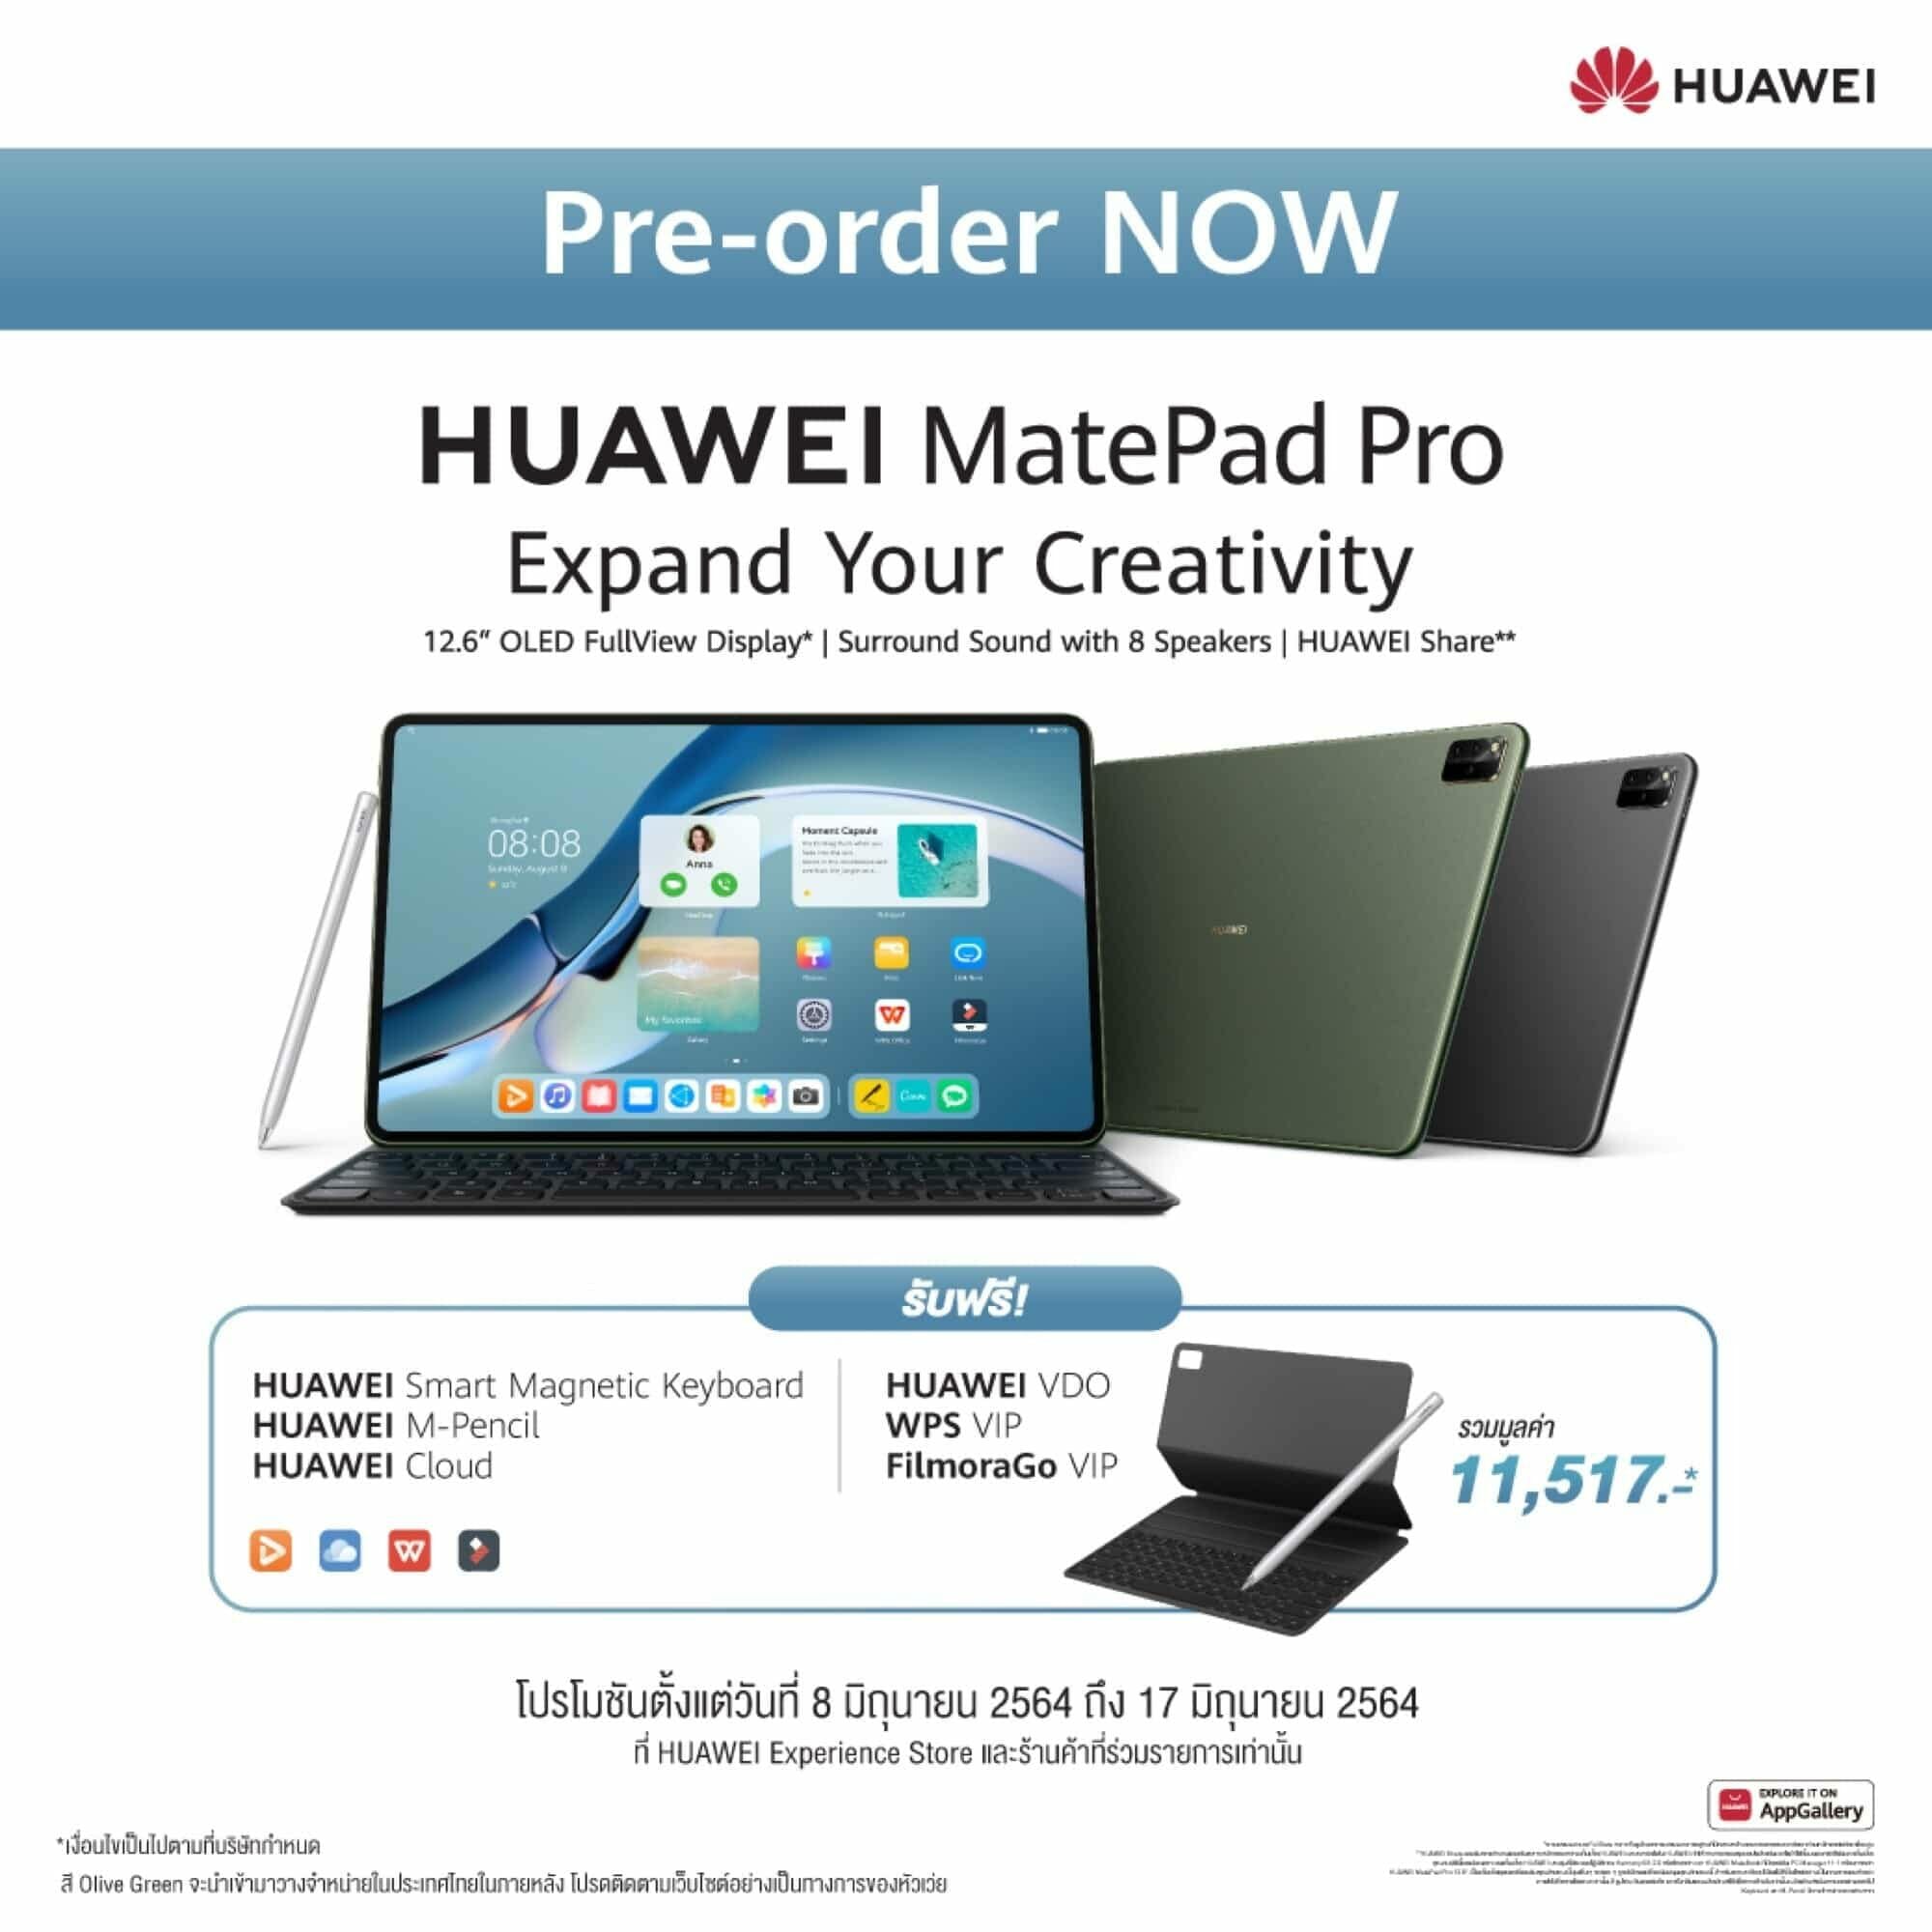 รวมจุดเด่น HUAWEI MatePad Pro 12.6-inch แท็บเล็ตพรีเมียมเพื่อการทำงานระดับโปรและความบันเทิง 13